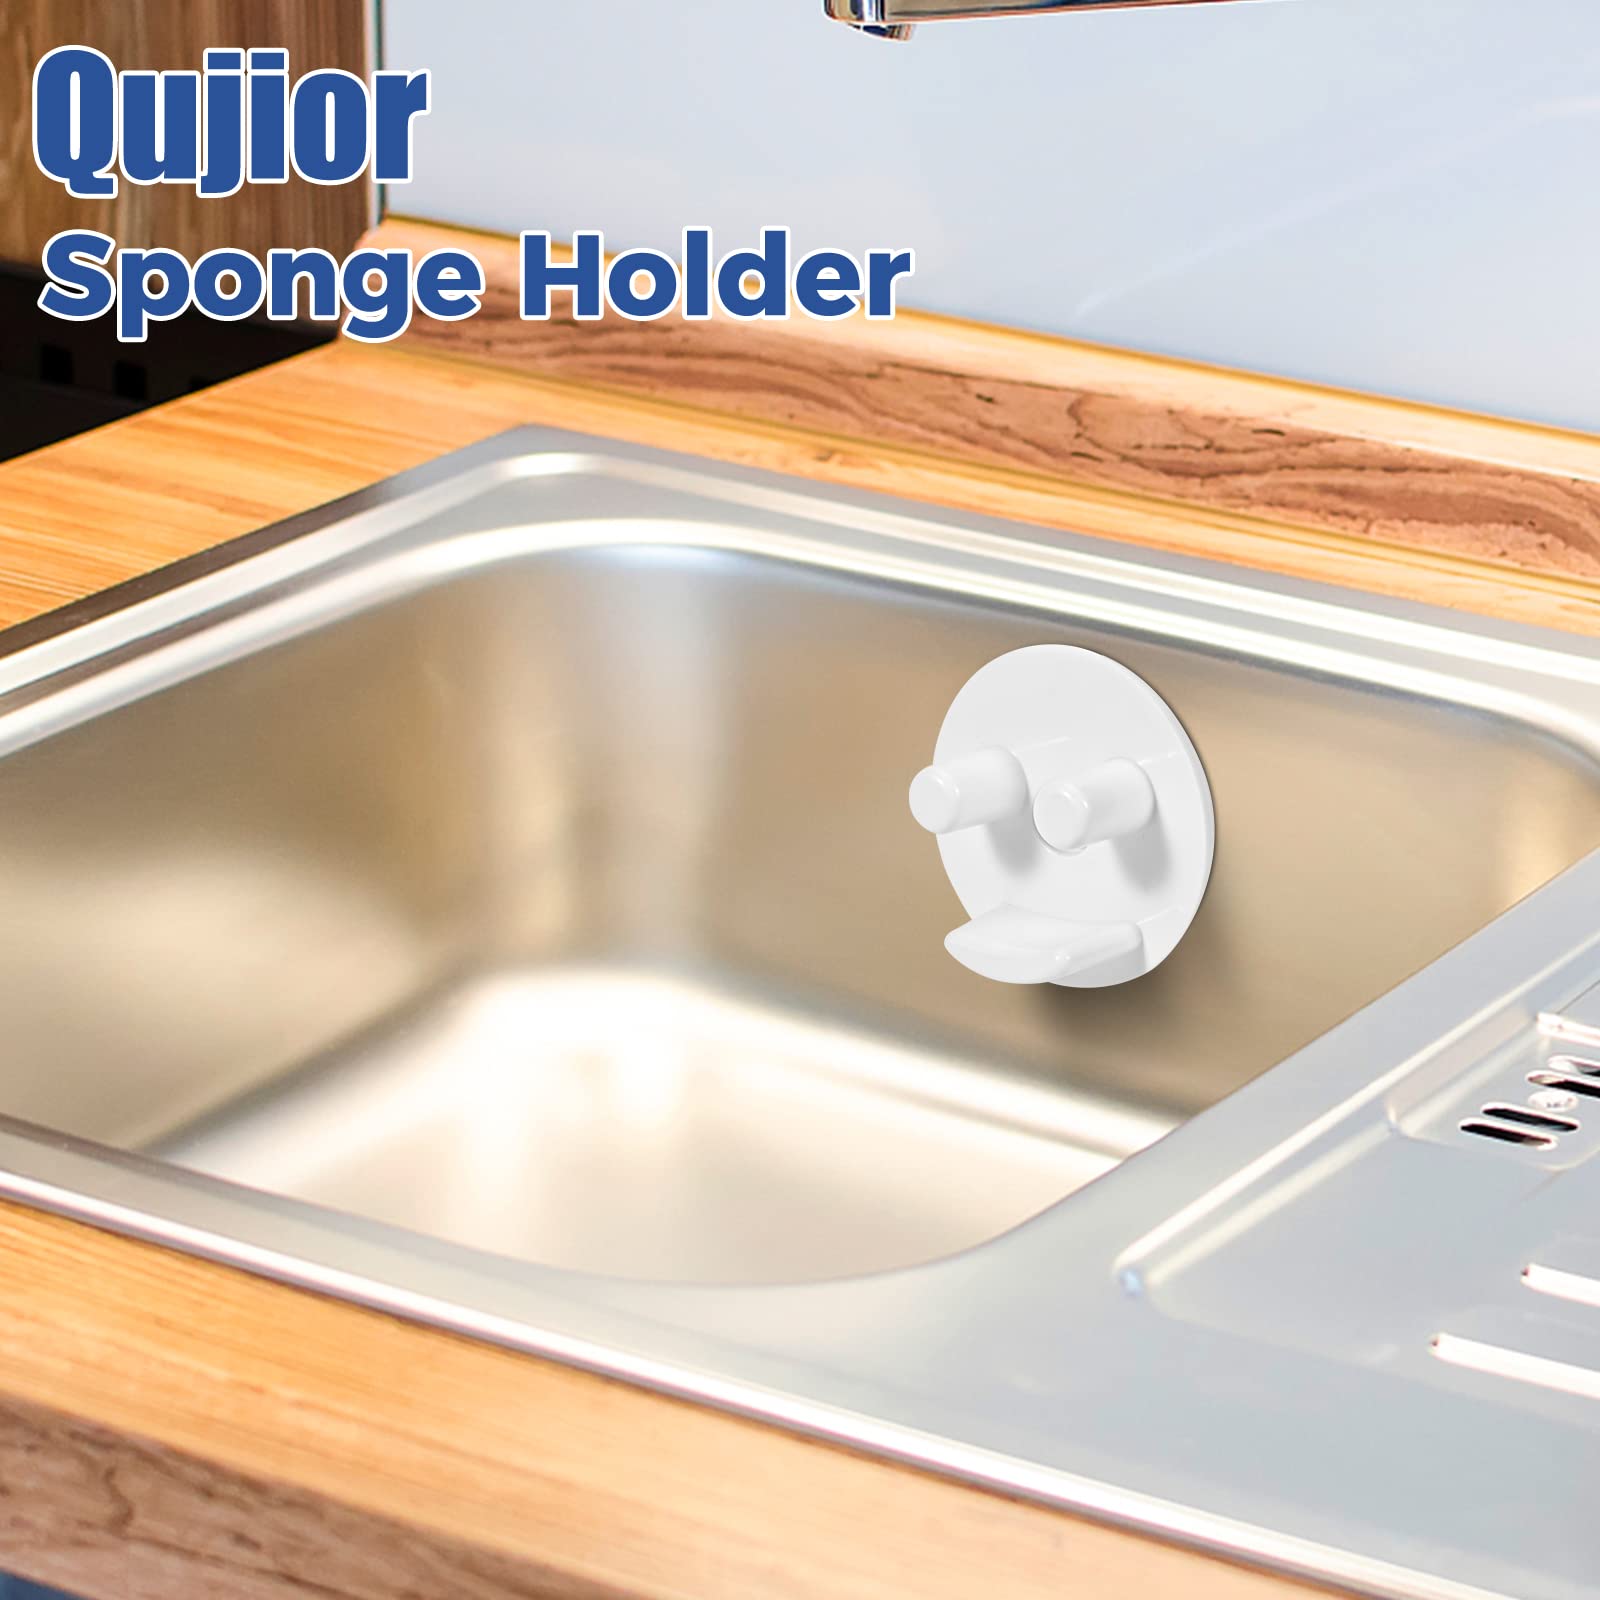 Scrub Sponge Holder for Kitchen Sink - Suction Cup Sponges Holder - Sink Sponge Caddy Organizer Daddy Holder (1 Pack)